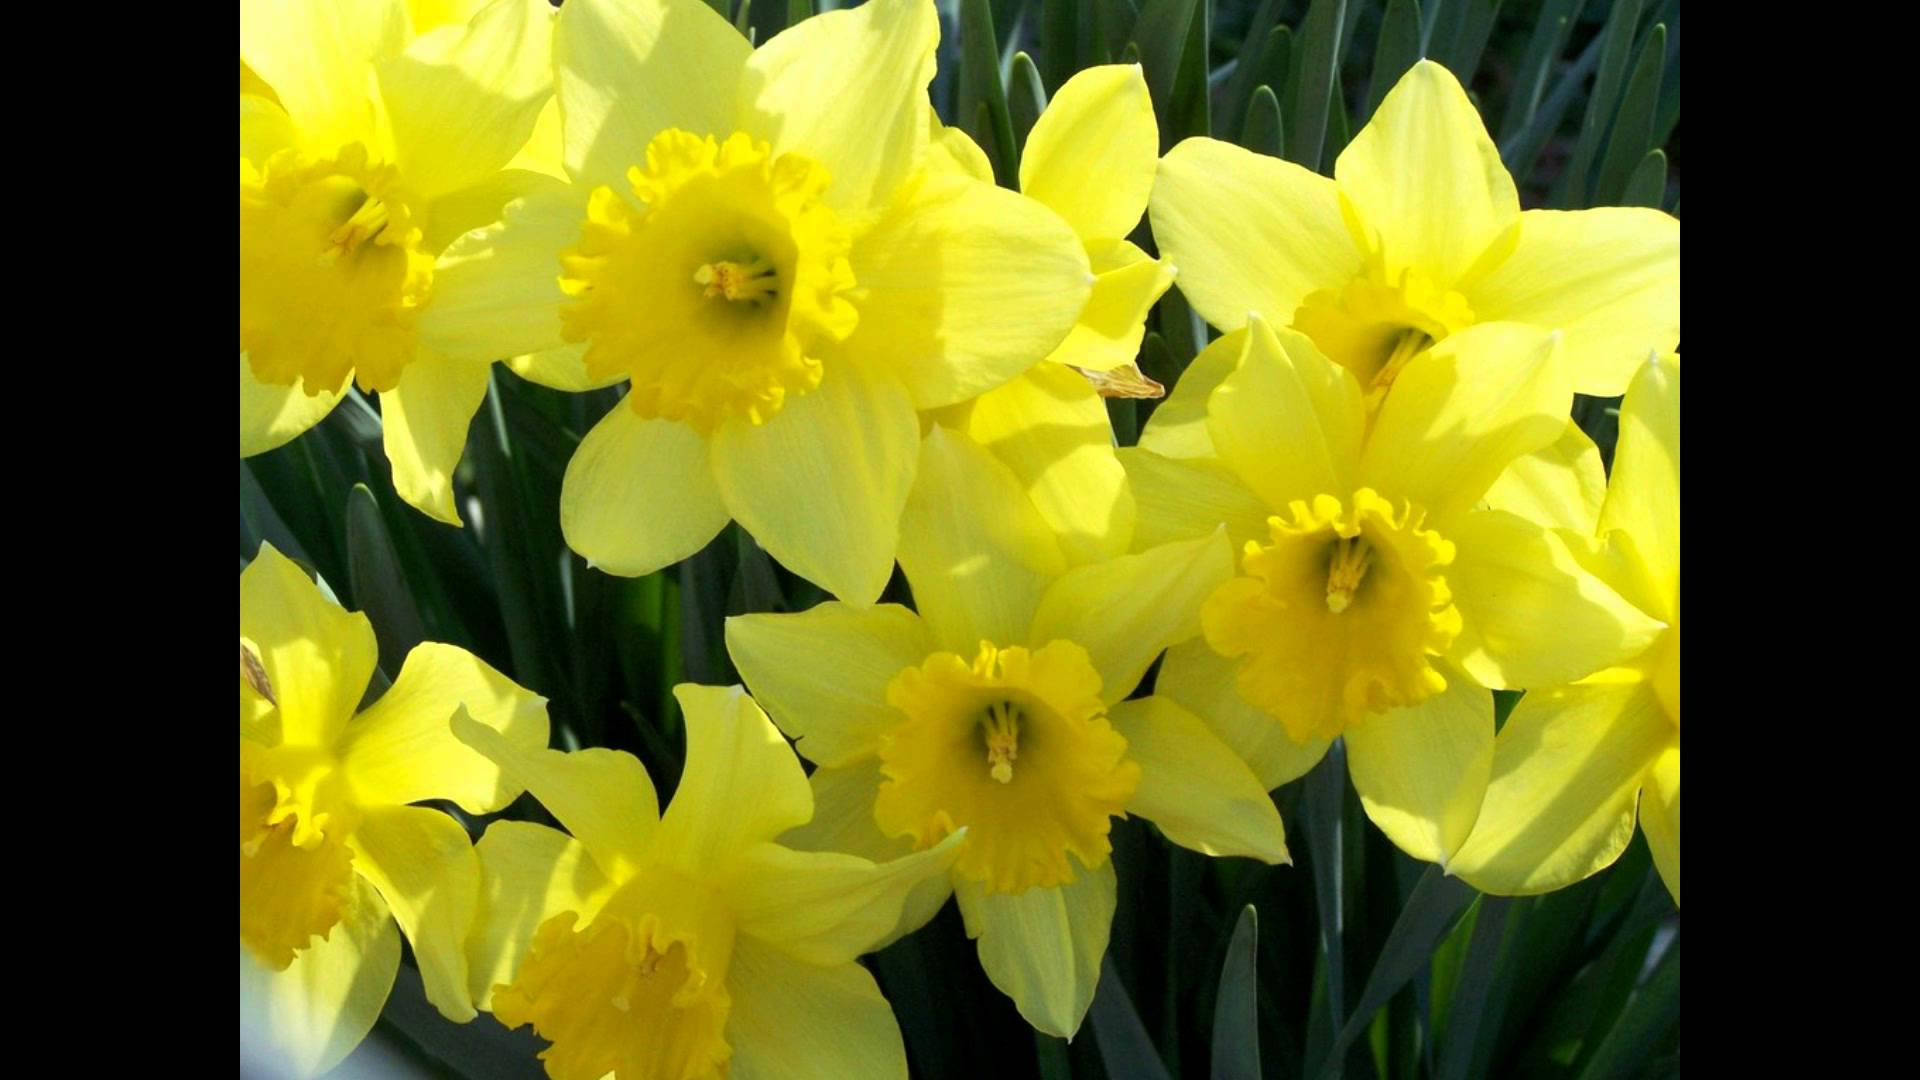 ✿Rebecca Tripp✿ - The Waltz of the Daffodils - YouTube